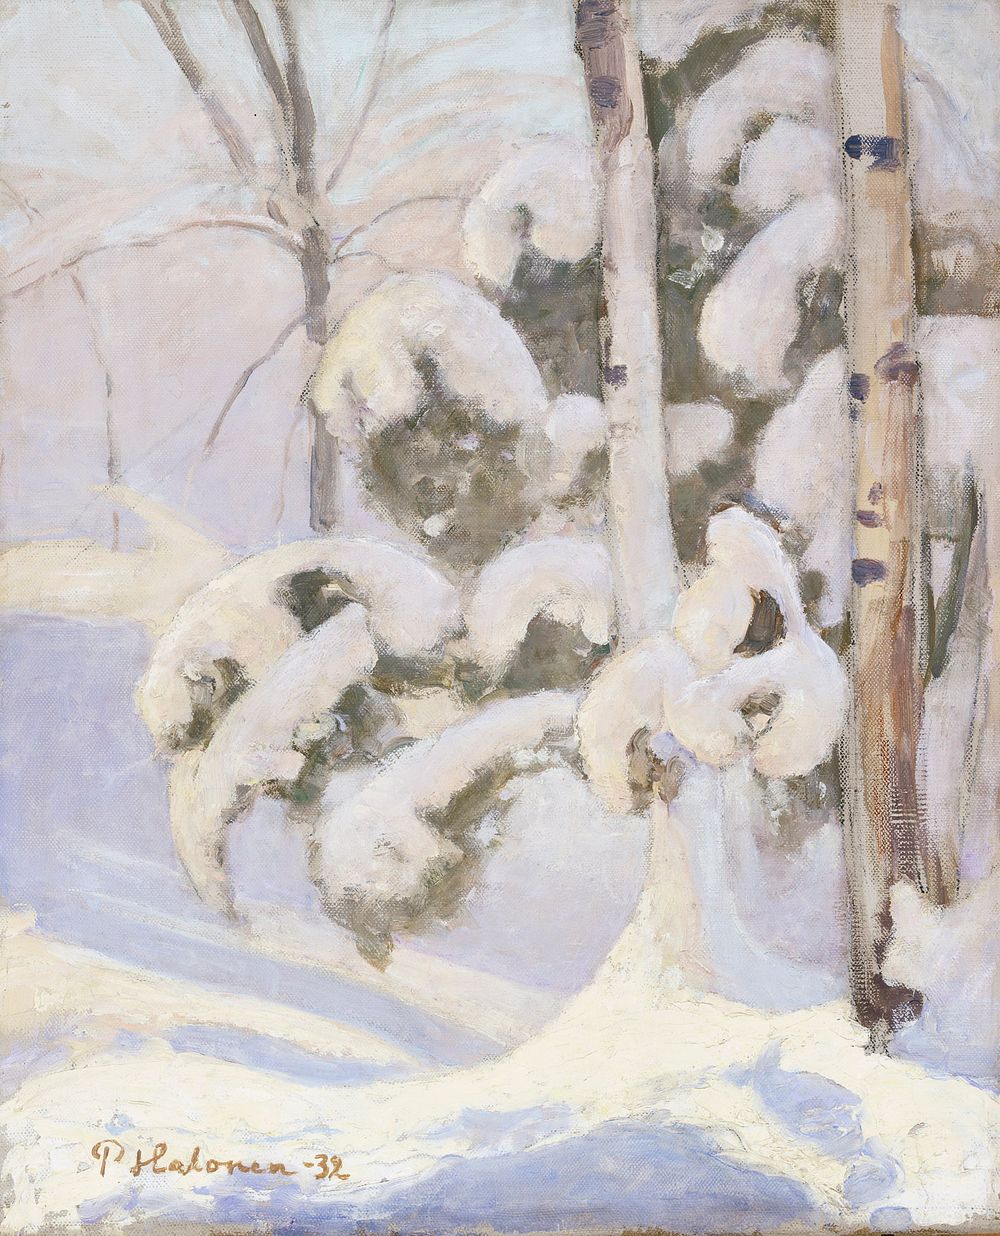 Winter landscape, 1932, by Pekka Halonen